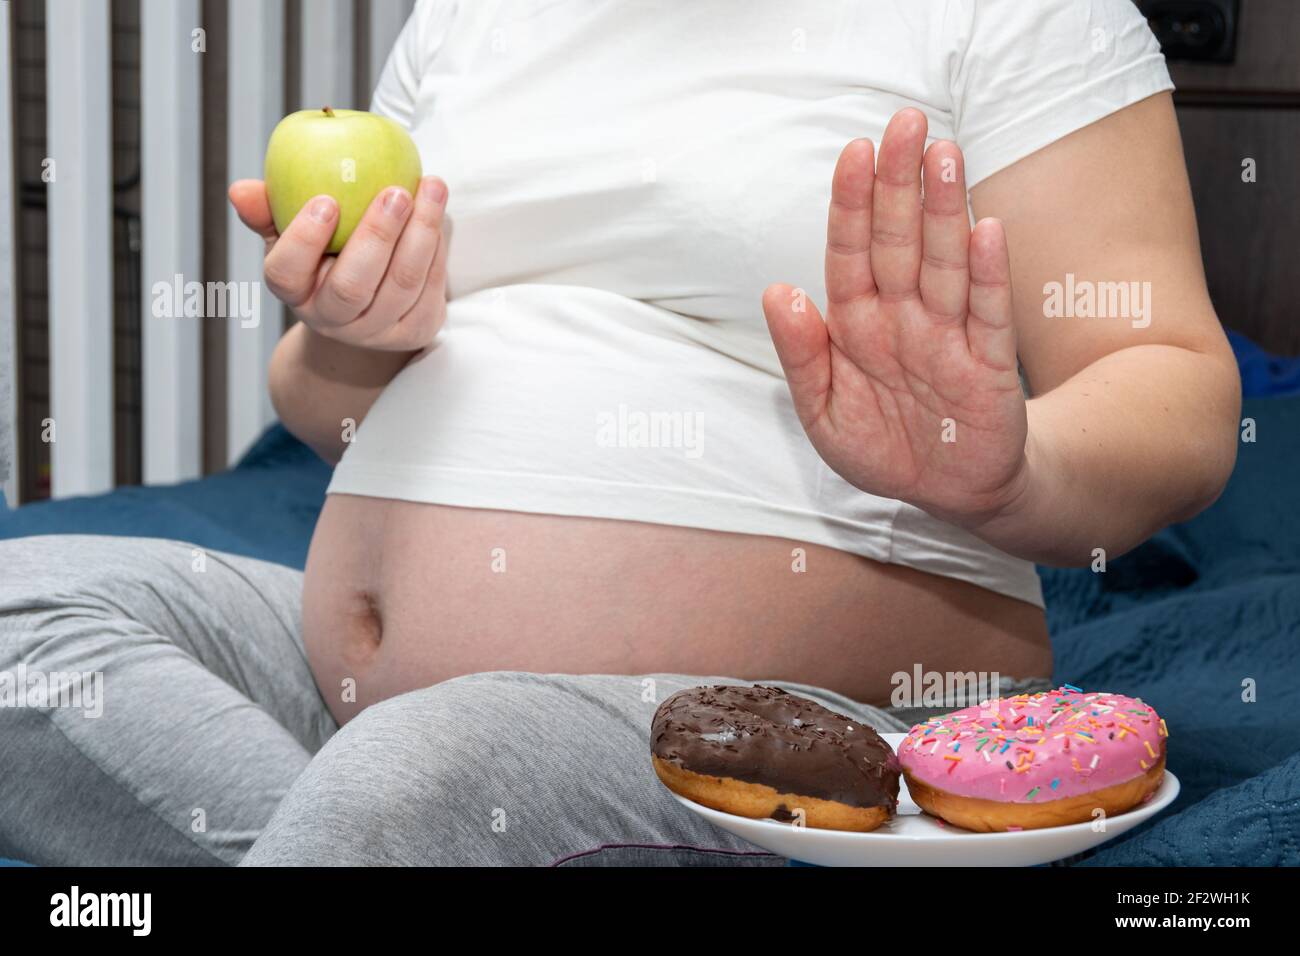 Gros plan d'une femme enceinte tenant une pomme verte dans ses mains, refusant les beignets. Concept d'alimentation saine pendant la grossesse. Concept de contrôle du poids. Banque D'Images